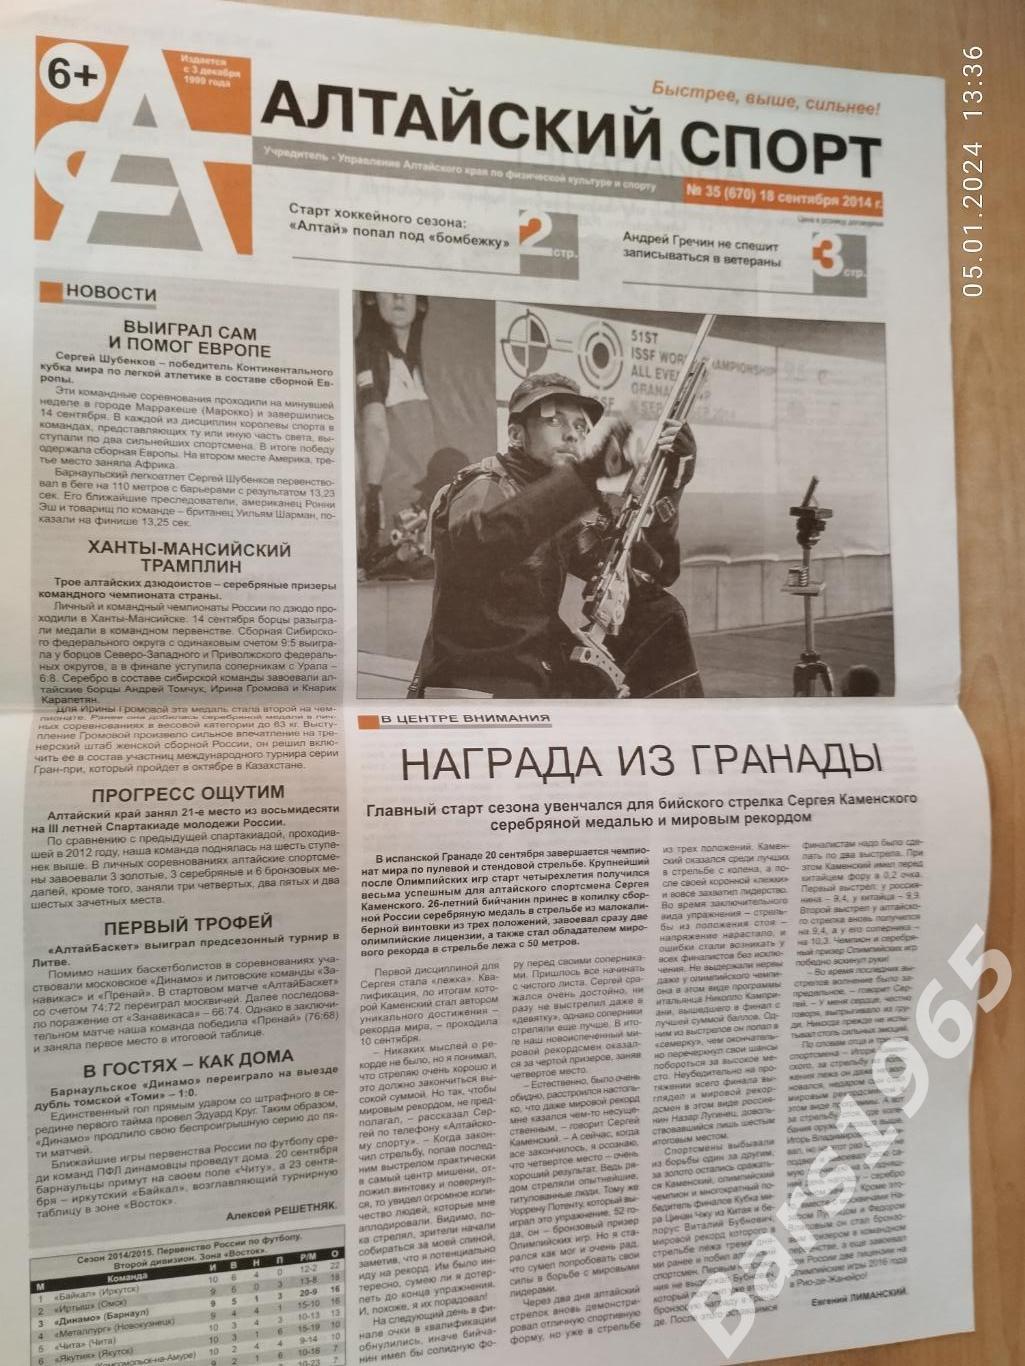 Алтайский спорт № 35 (670) 18 сентября 2014